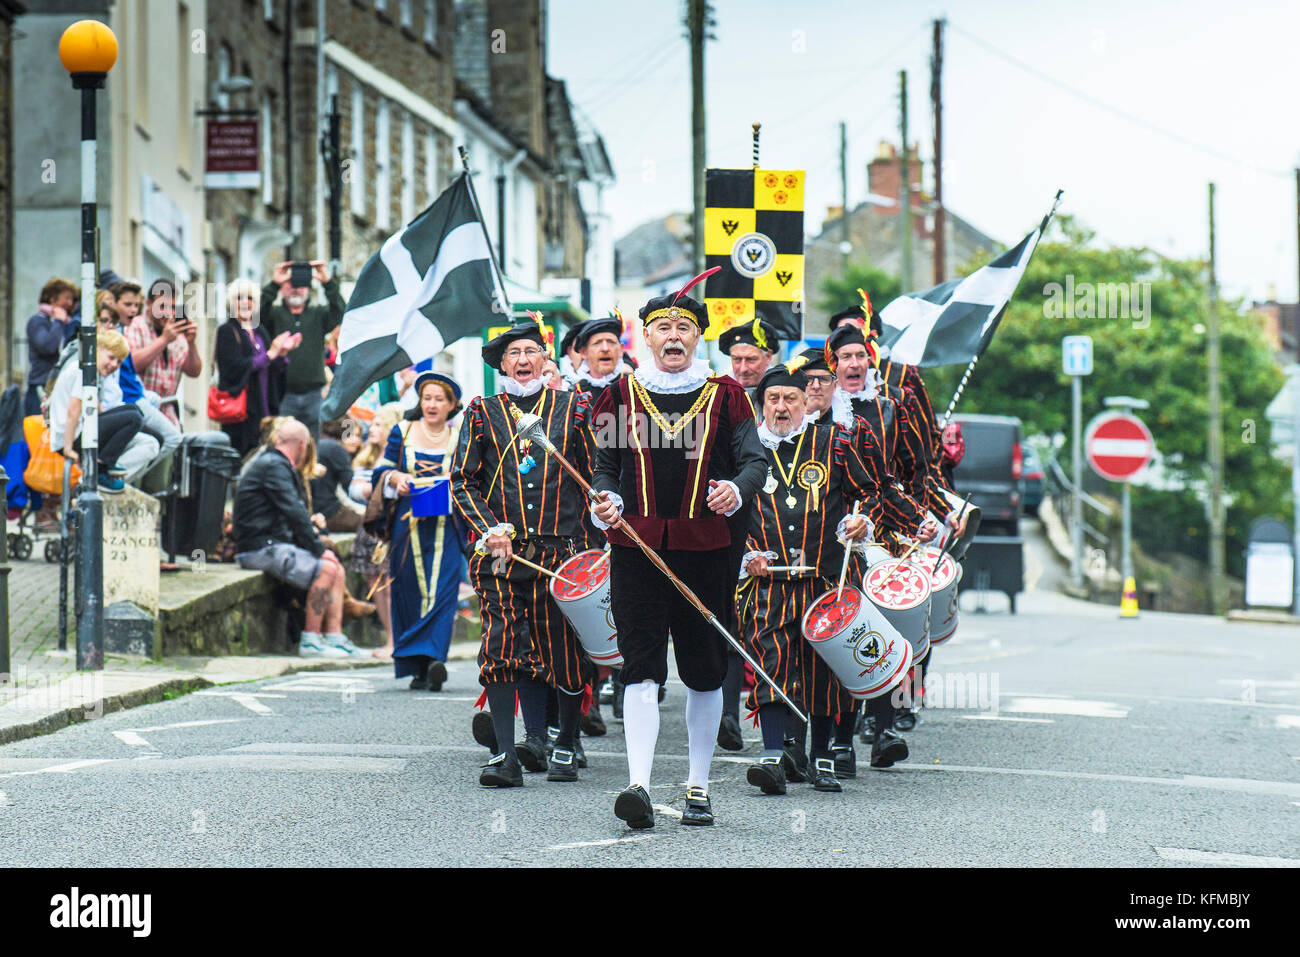 Penryn Kemeneth zwei Tage Heritage Festival im Penryn Falmouth Cornwall - der Spielmannszug marschieren durch die Straßen von Penryn. Stockfoto